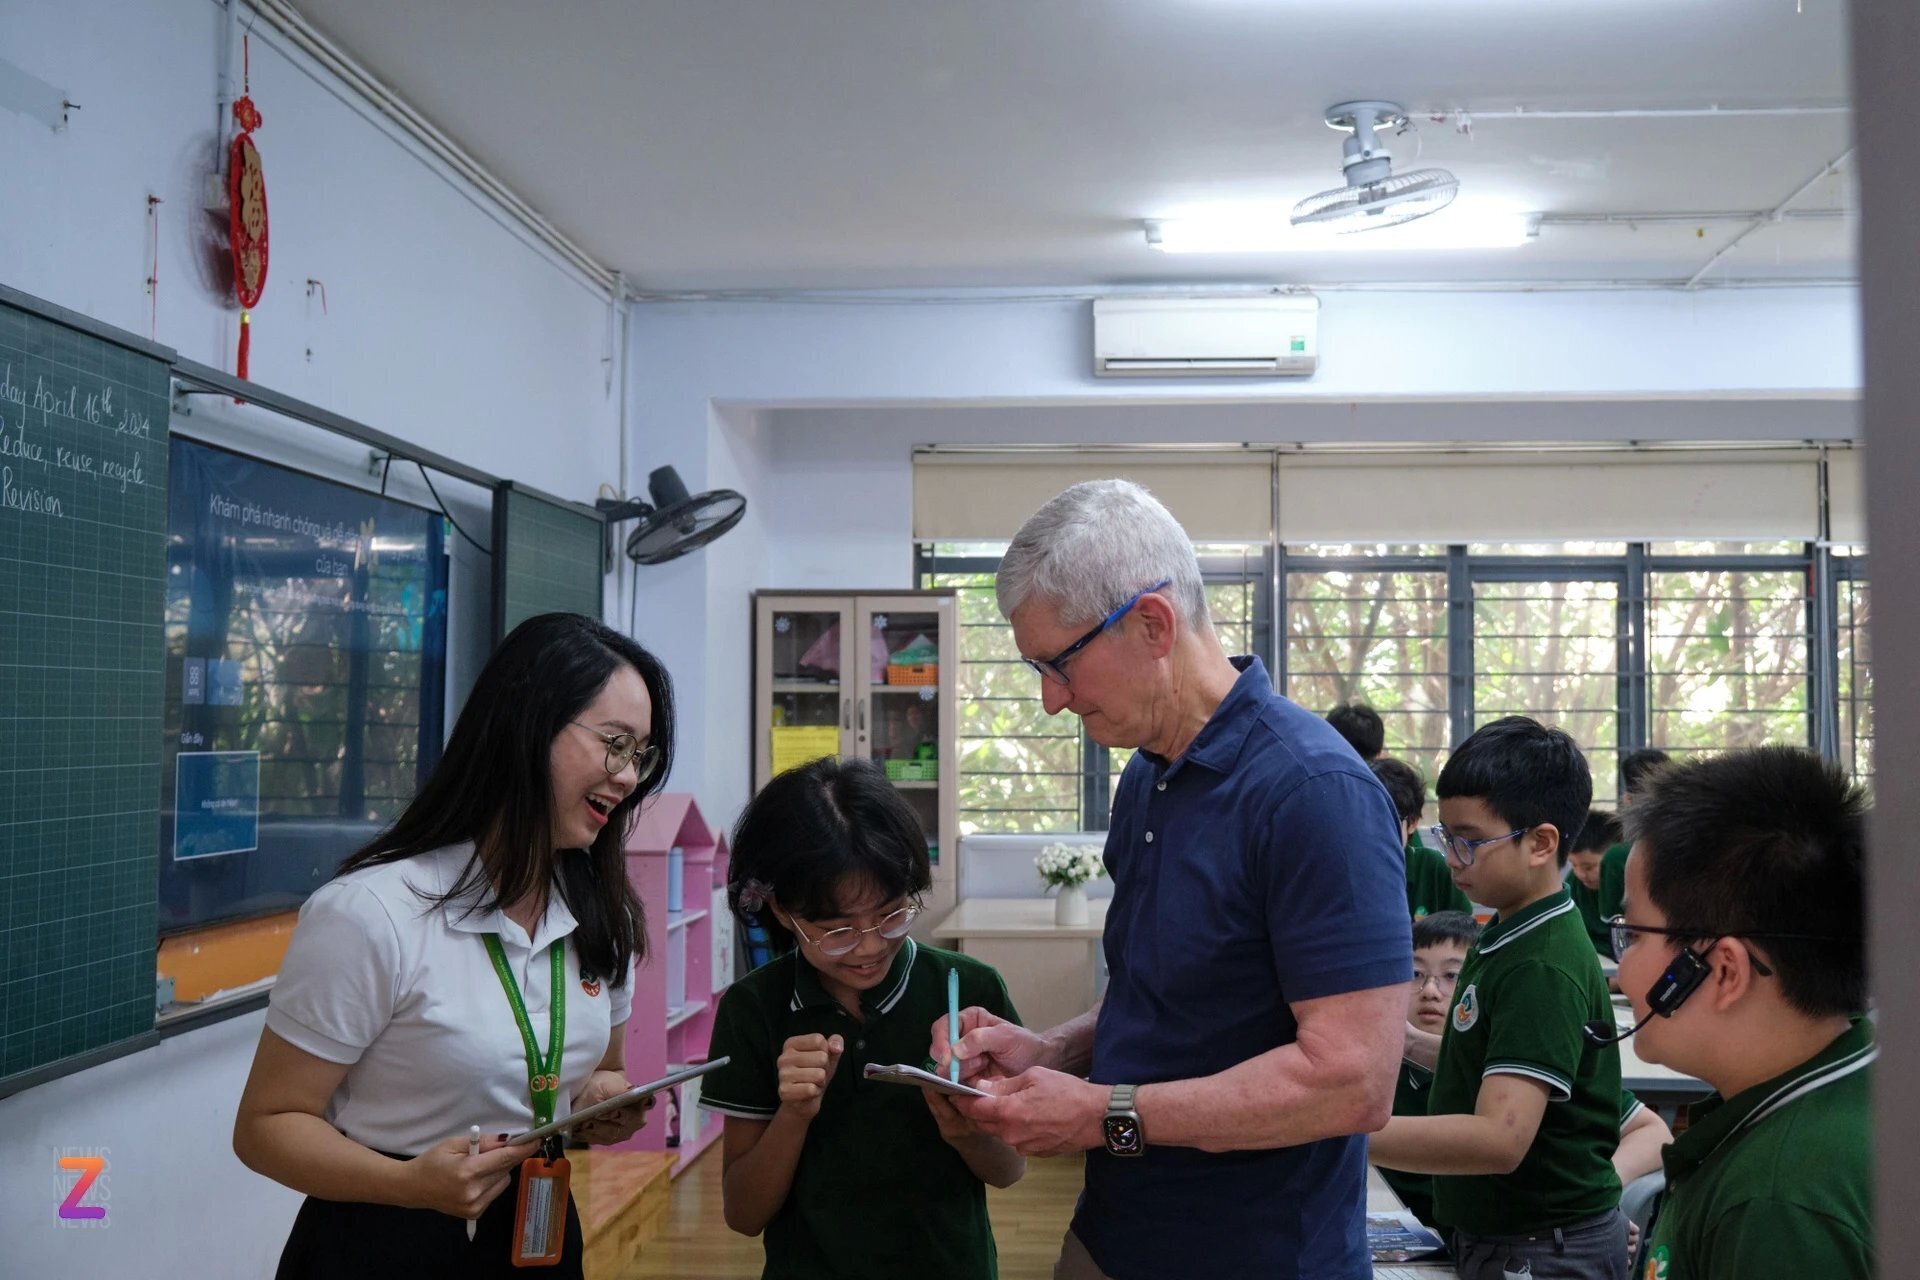 Tim Cook tỏ ra rất chăm chú khi nghe em học sinh trình bày. Phần giới thiệu chỉ kéo dài khoảng 5 phút, và khi rời đi CEO Apple cũng chụp một kiểu ảnh lưu niệm với toàn bộ học sinh, giáo viên trong lớp.